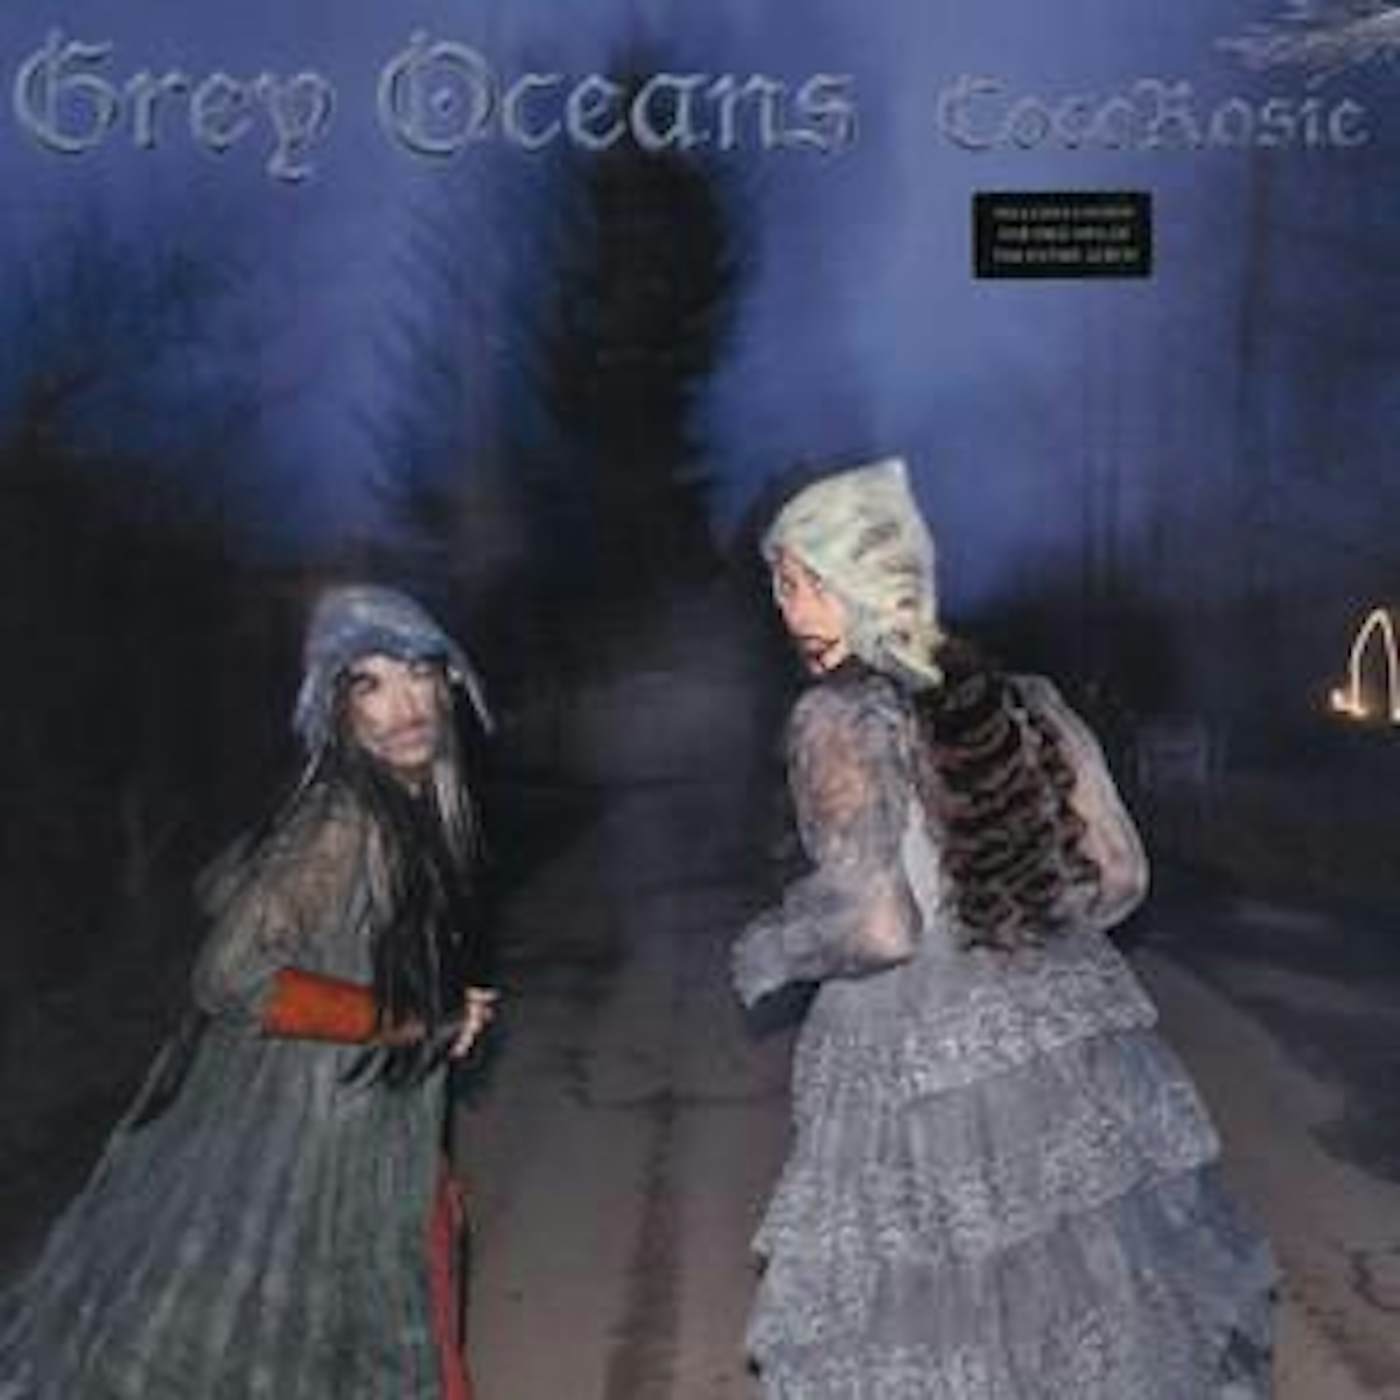 CocoRosie GREY OCEANS Vinyl Record